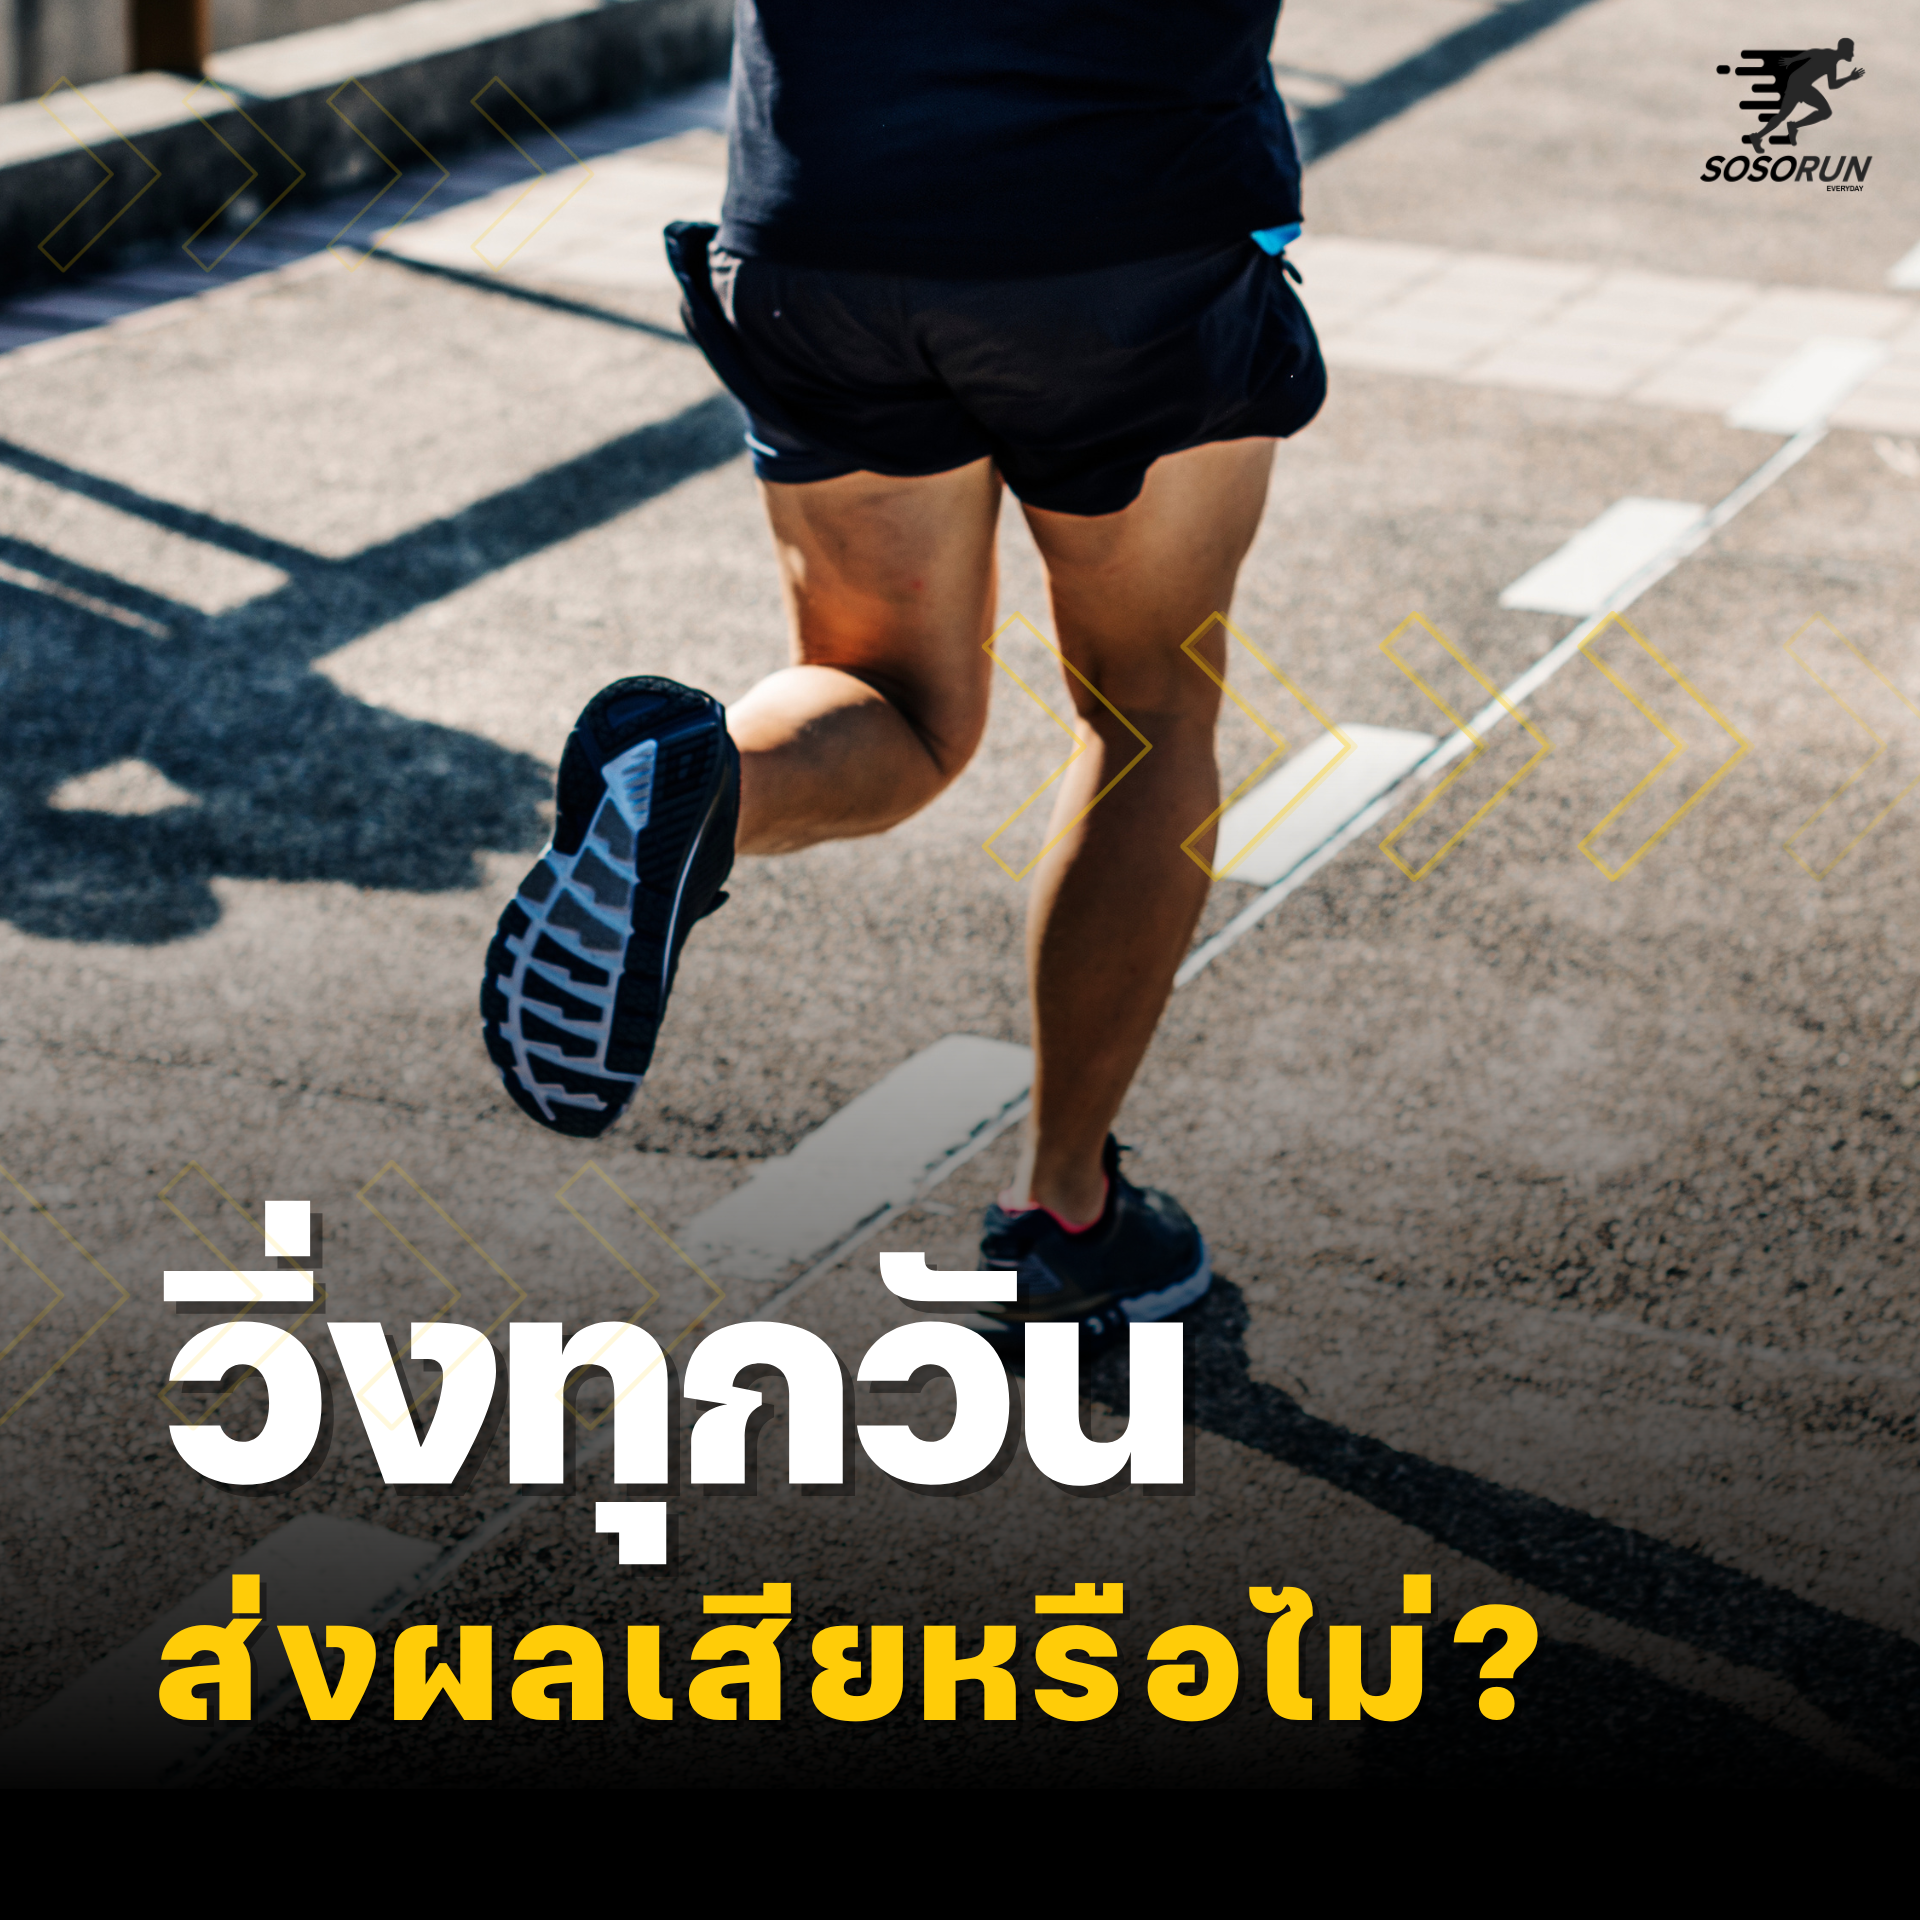 วิ่งทุกวันส่งผลเสียต่อร่างกายหรือไม่ ?